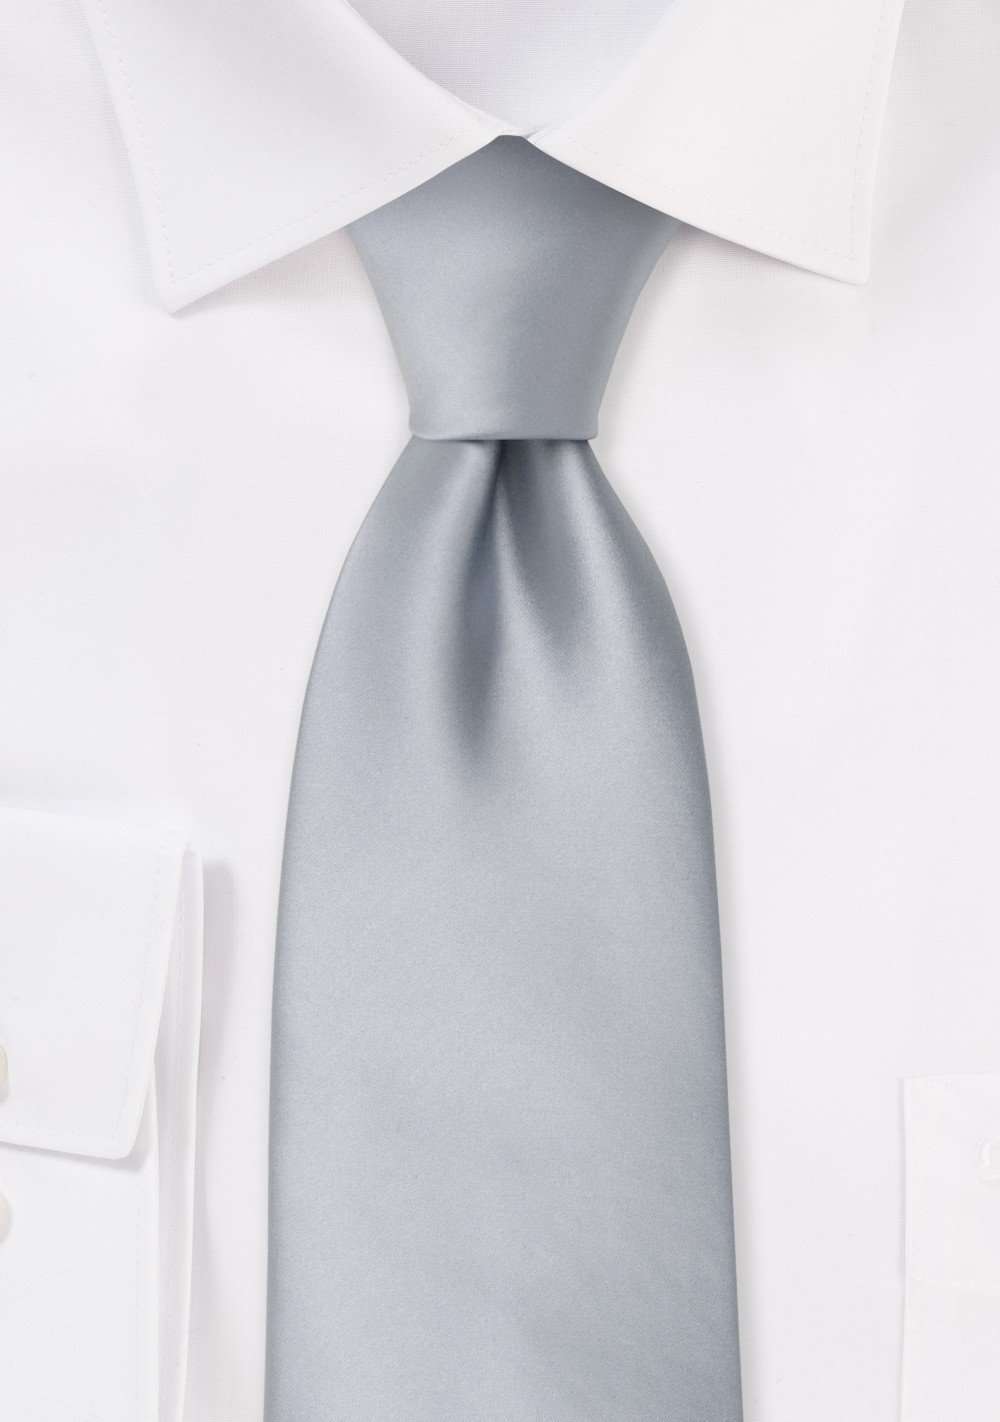 Silver Solid Necktie - Men Suits